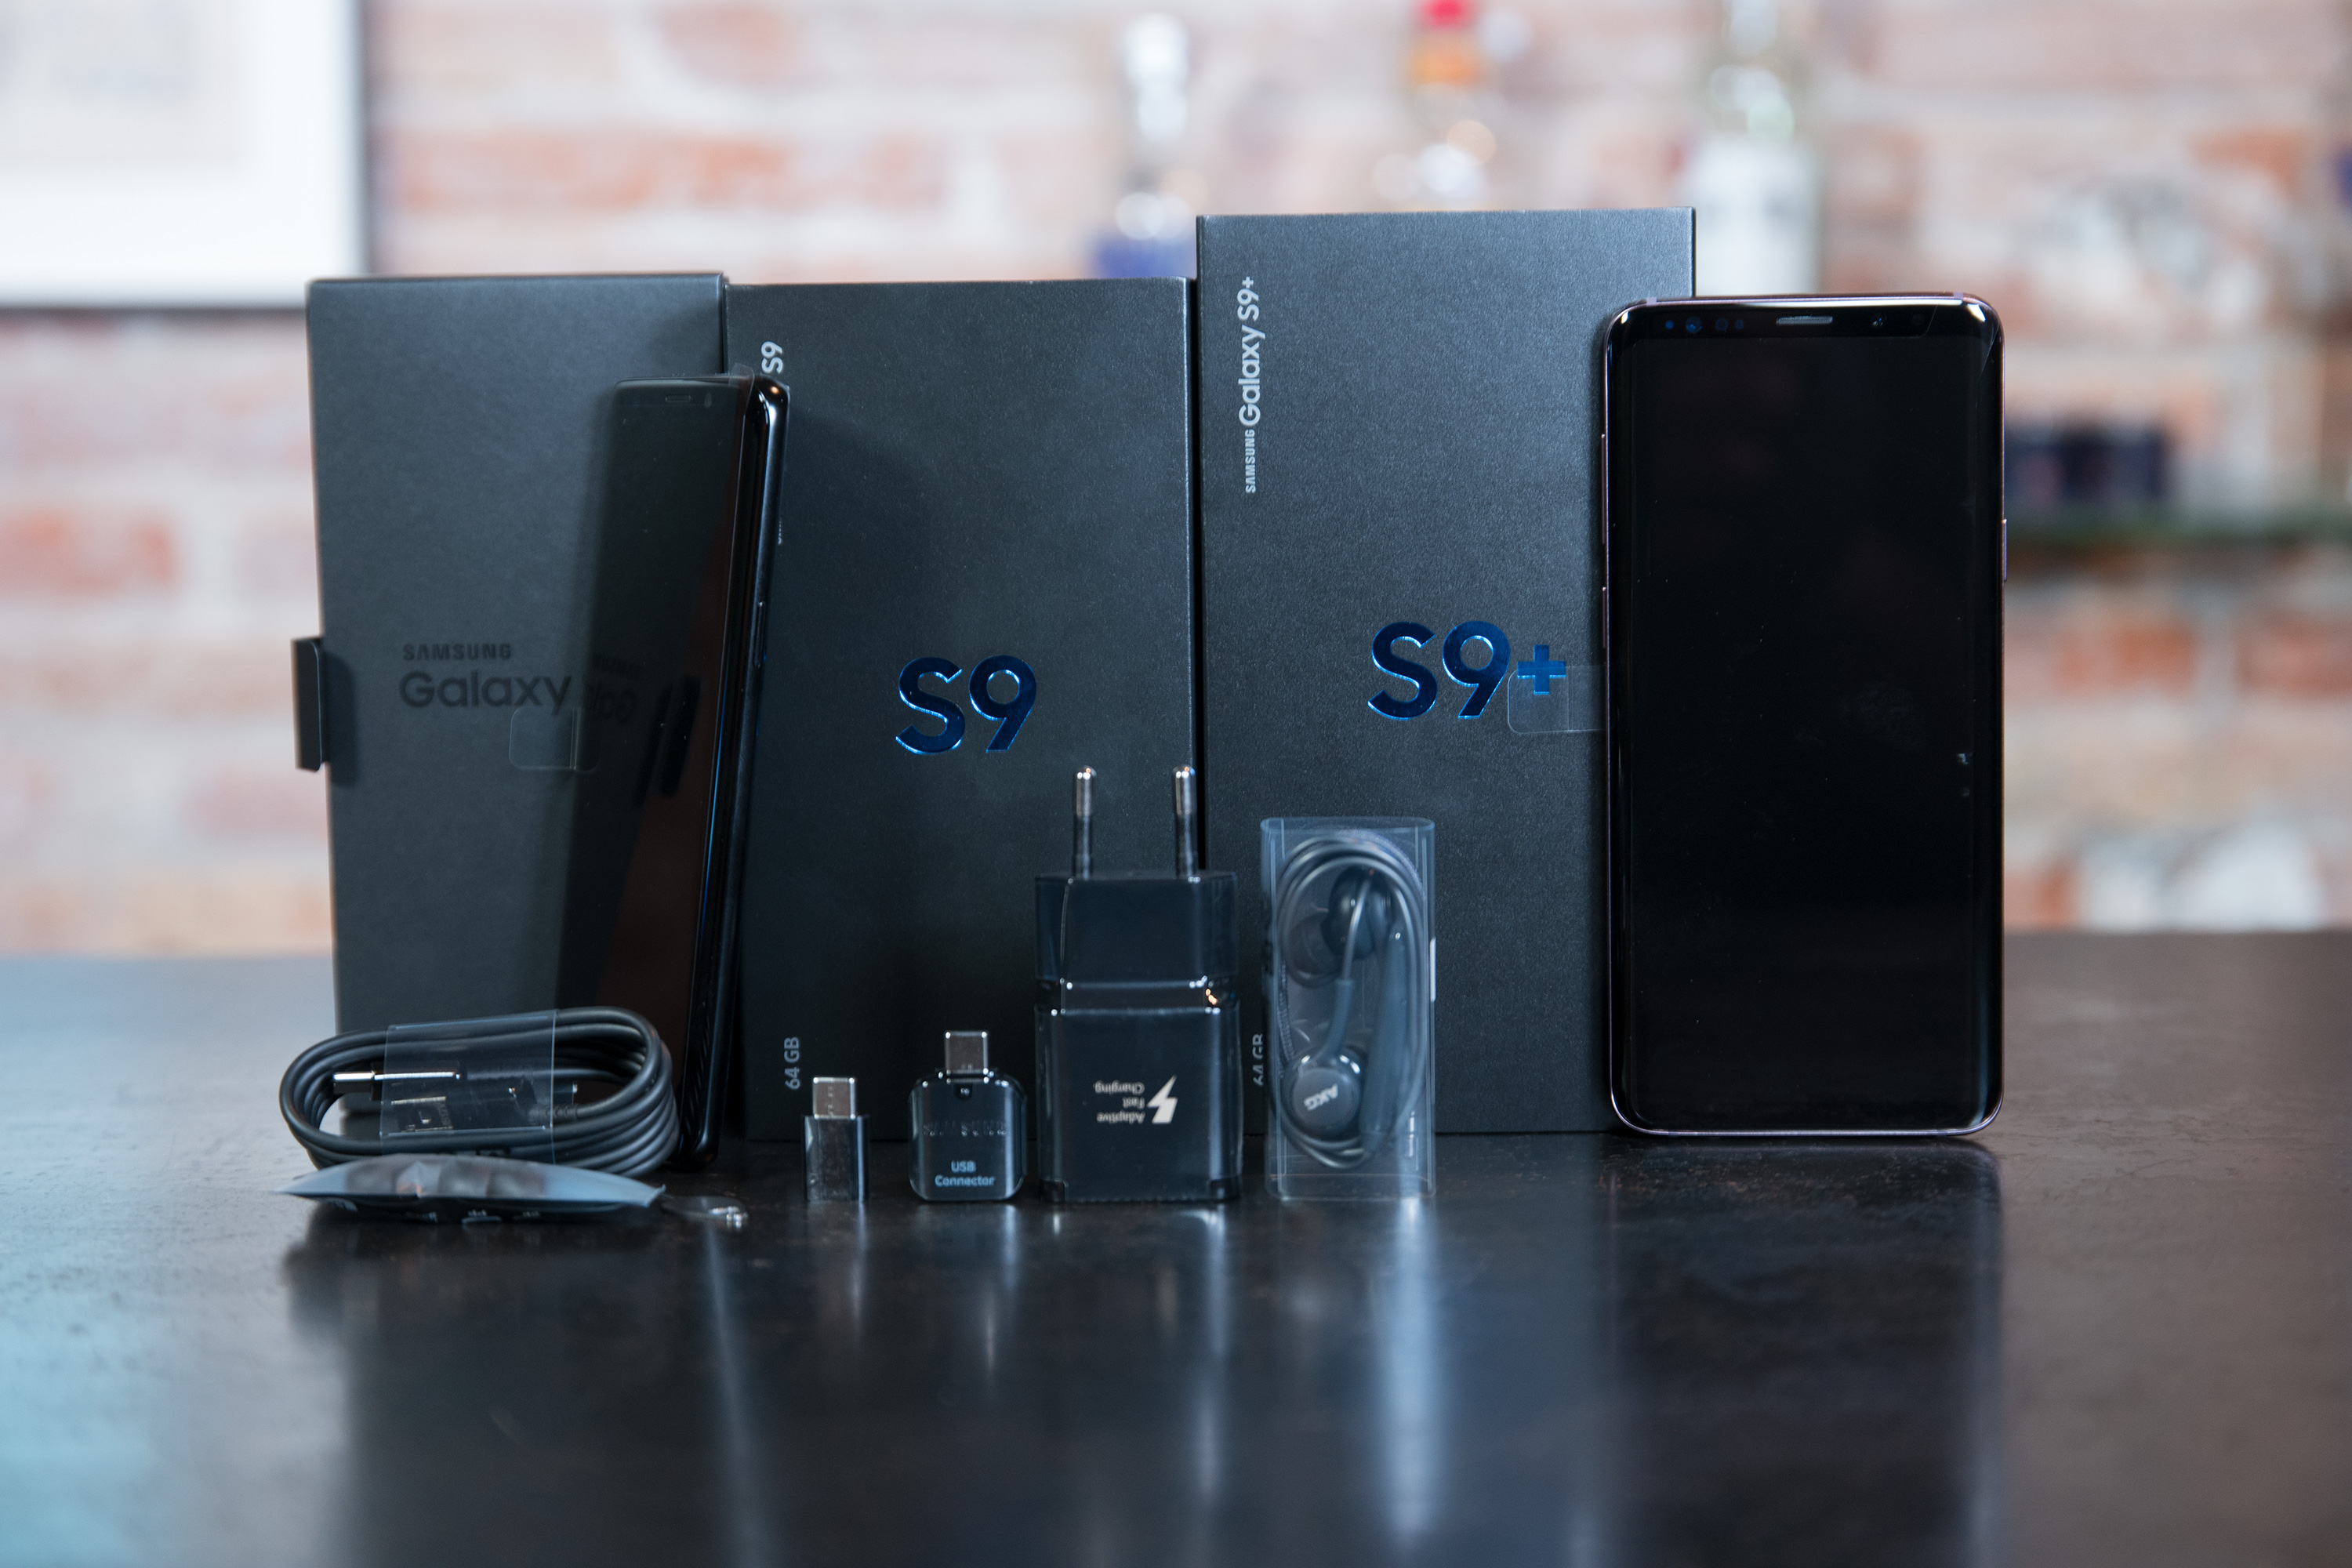 Thinhmobile - Địa chỉ bán Samsung Galaxy S9 uy tín chất lượng